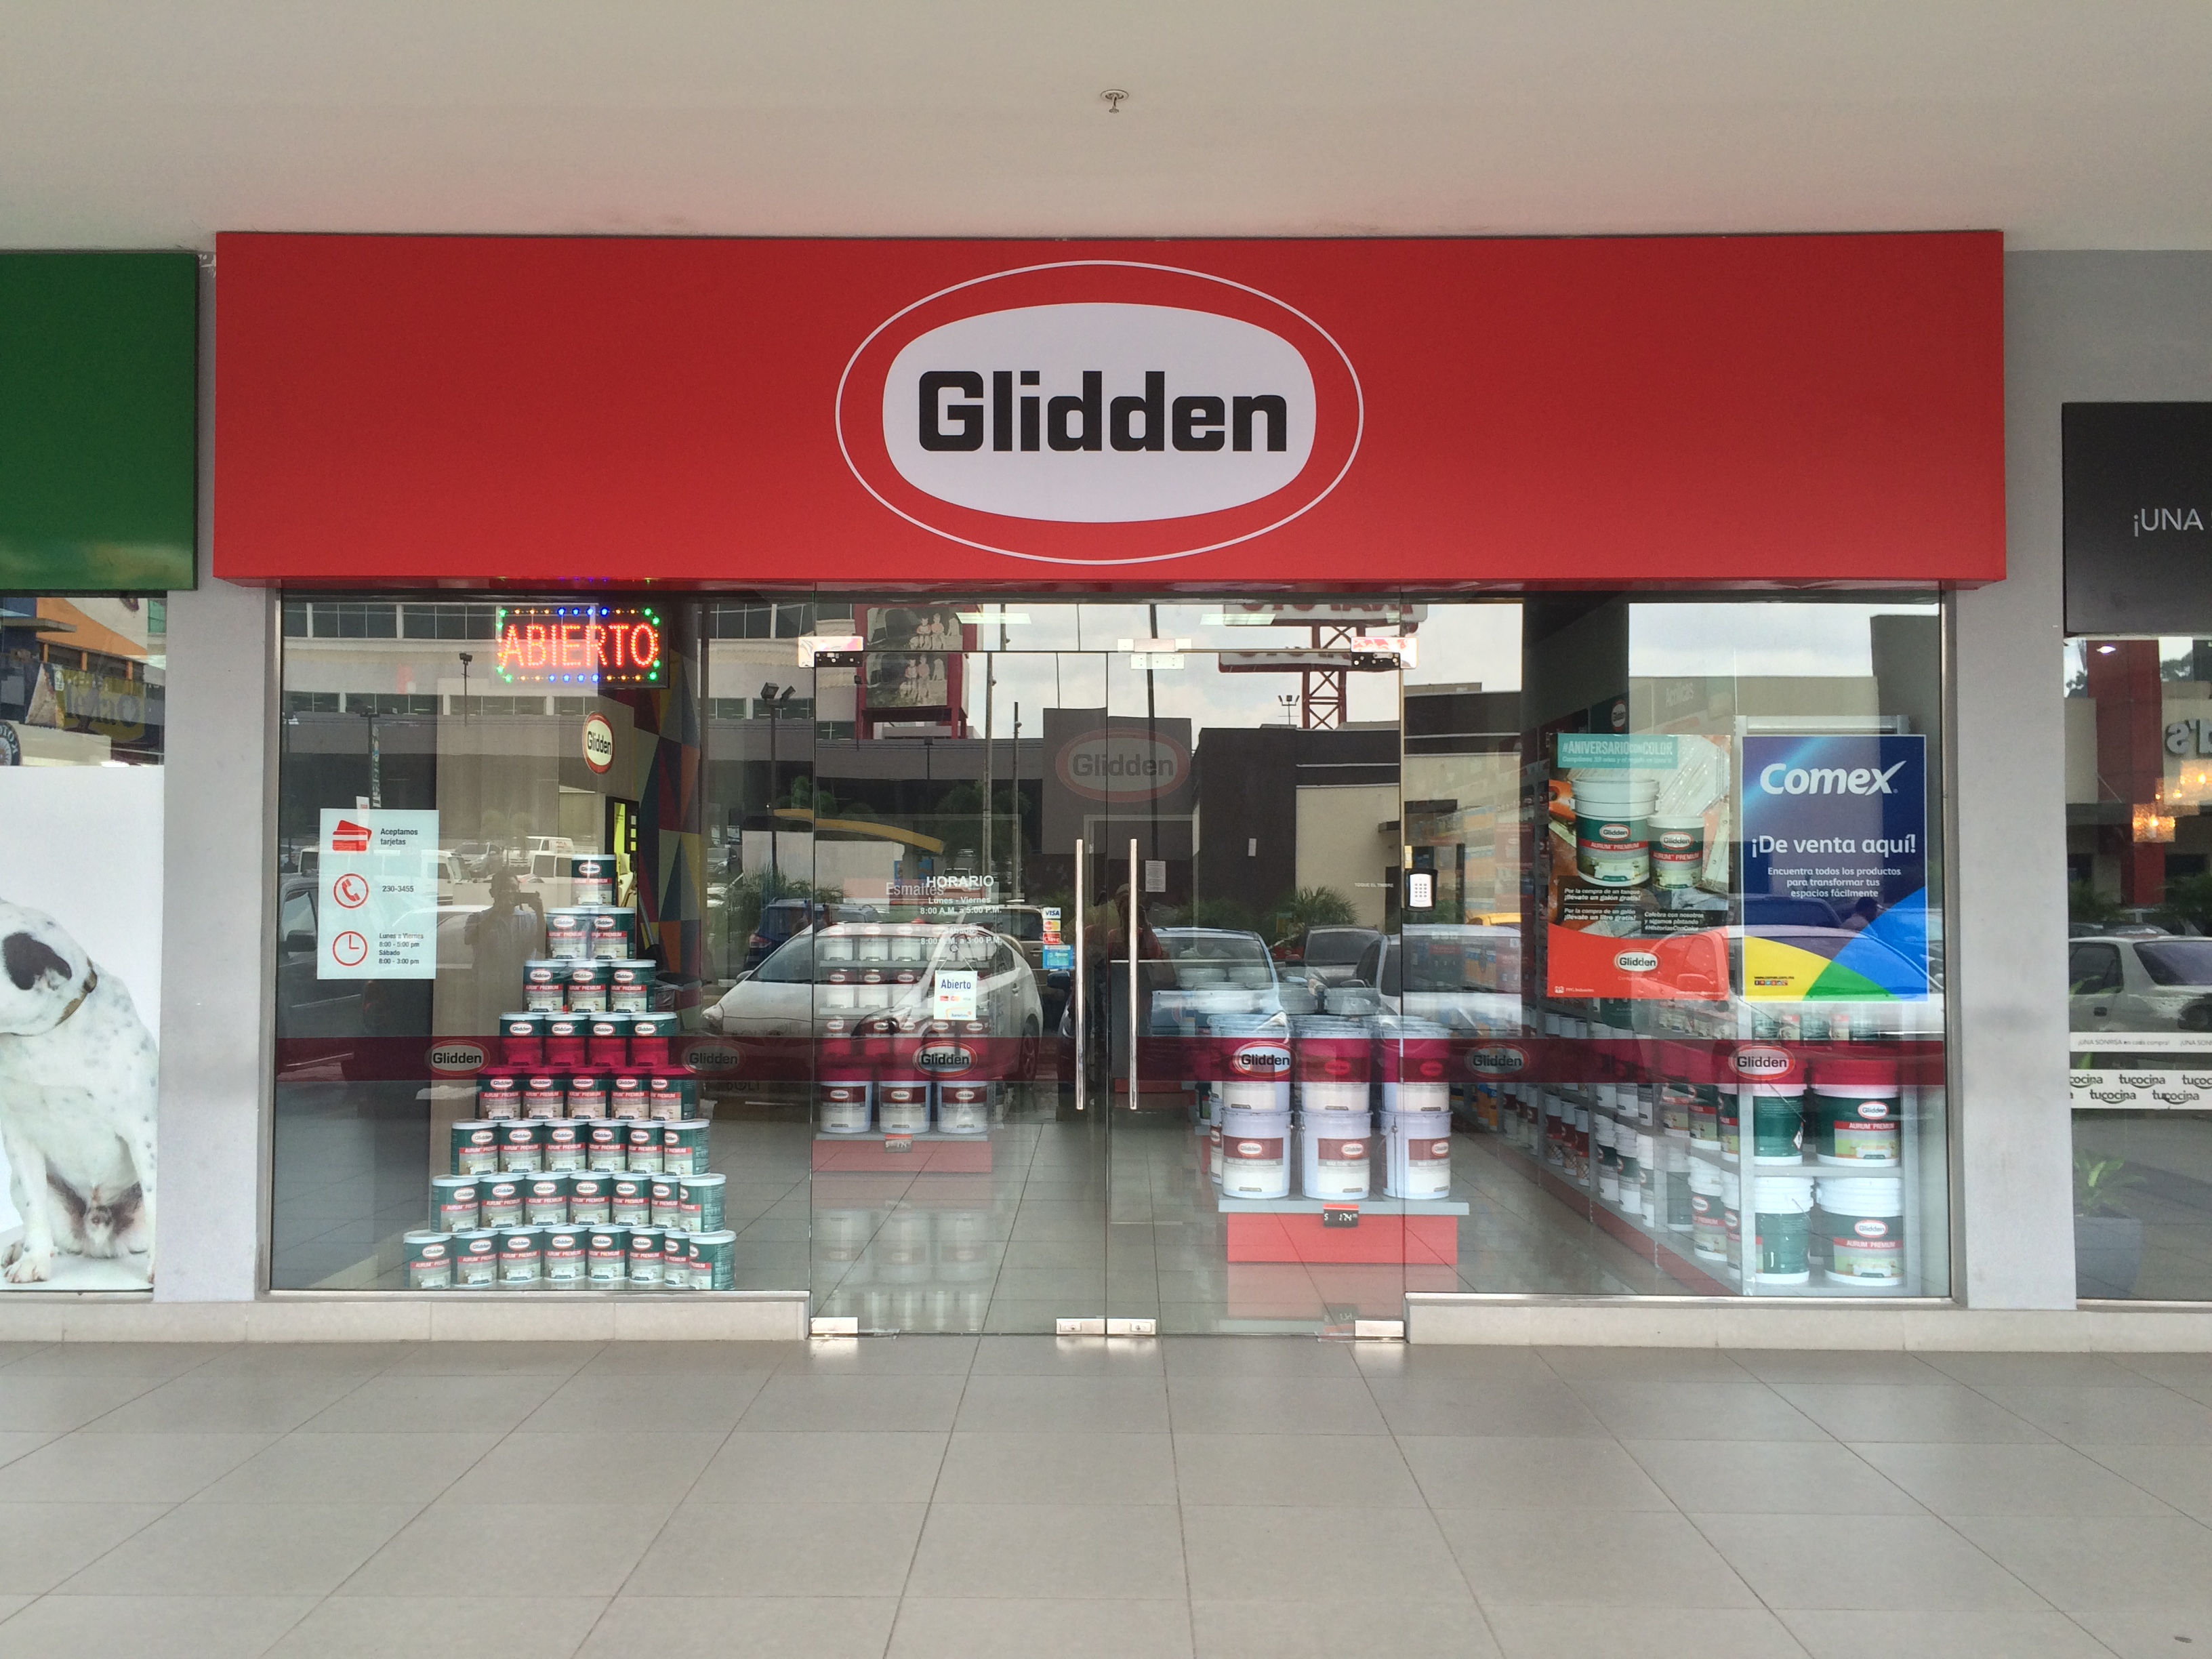 PPG confirma apertura de nueva fábrica Glidden en Panamá durante 2018